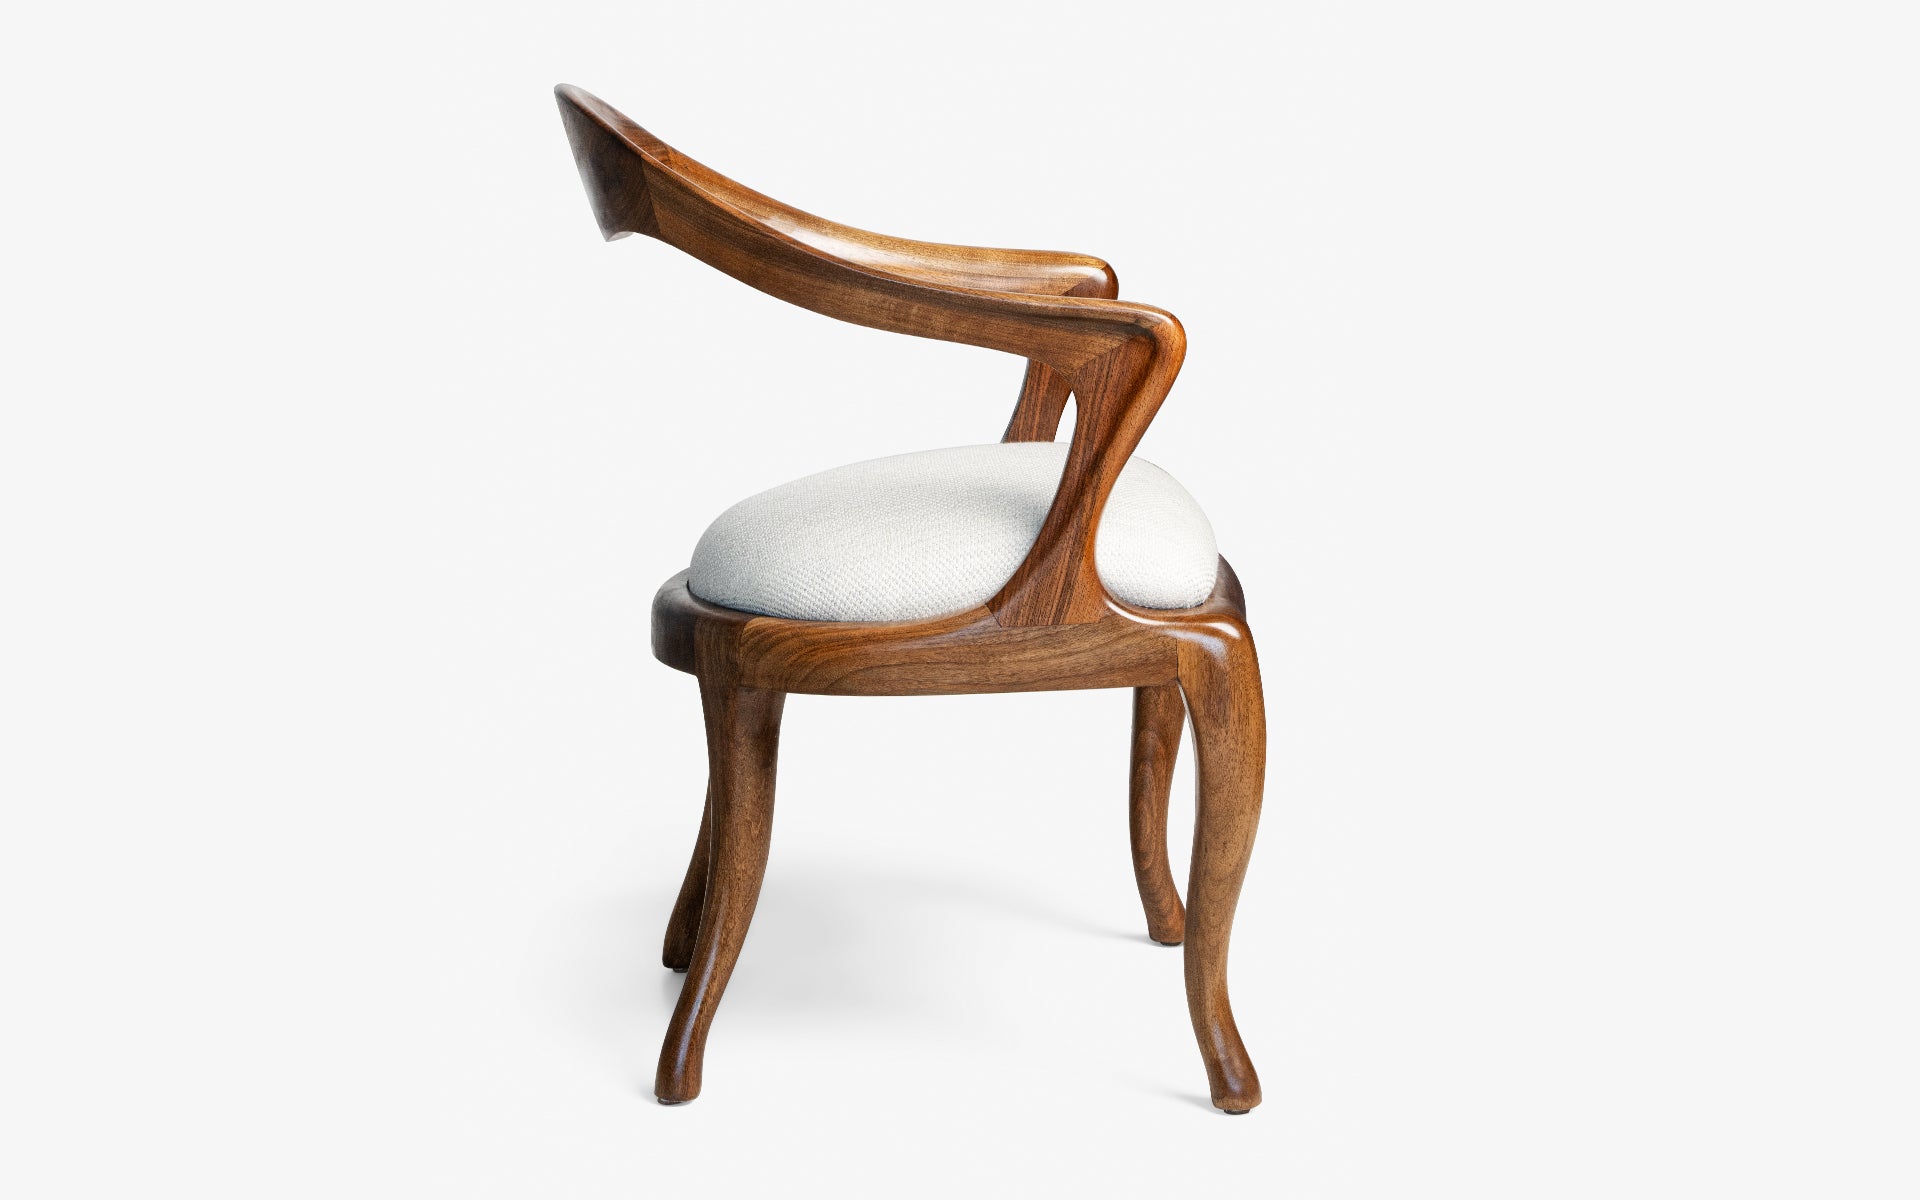 Yuki Wooden Chair